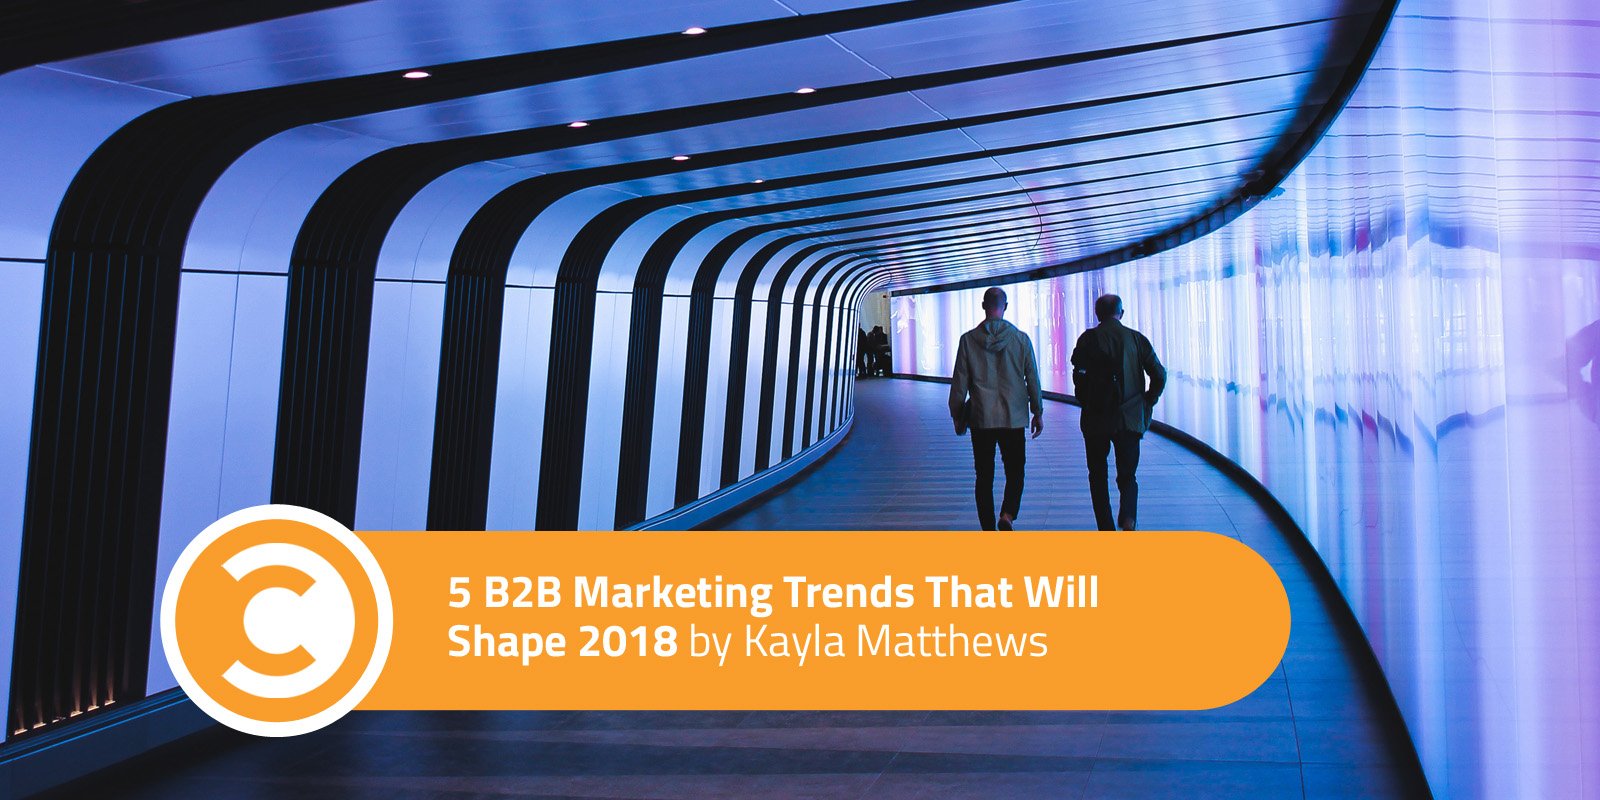 5 B2B Marketing Trends That Will Shape 2018